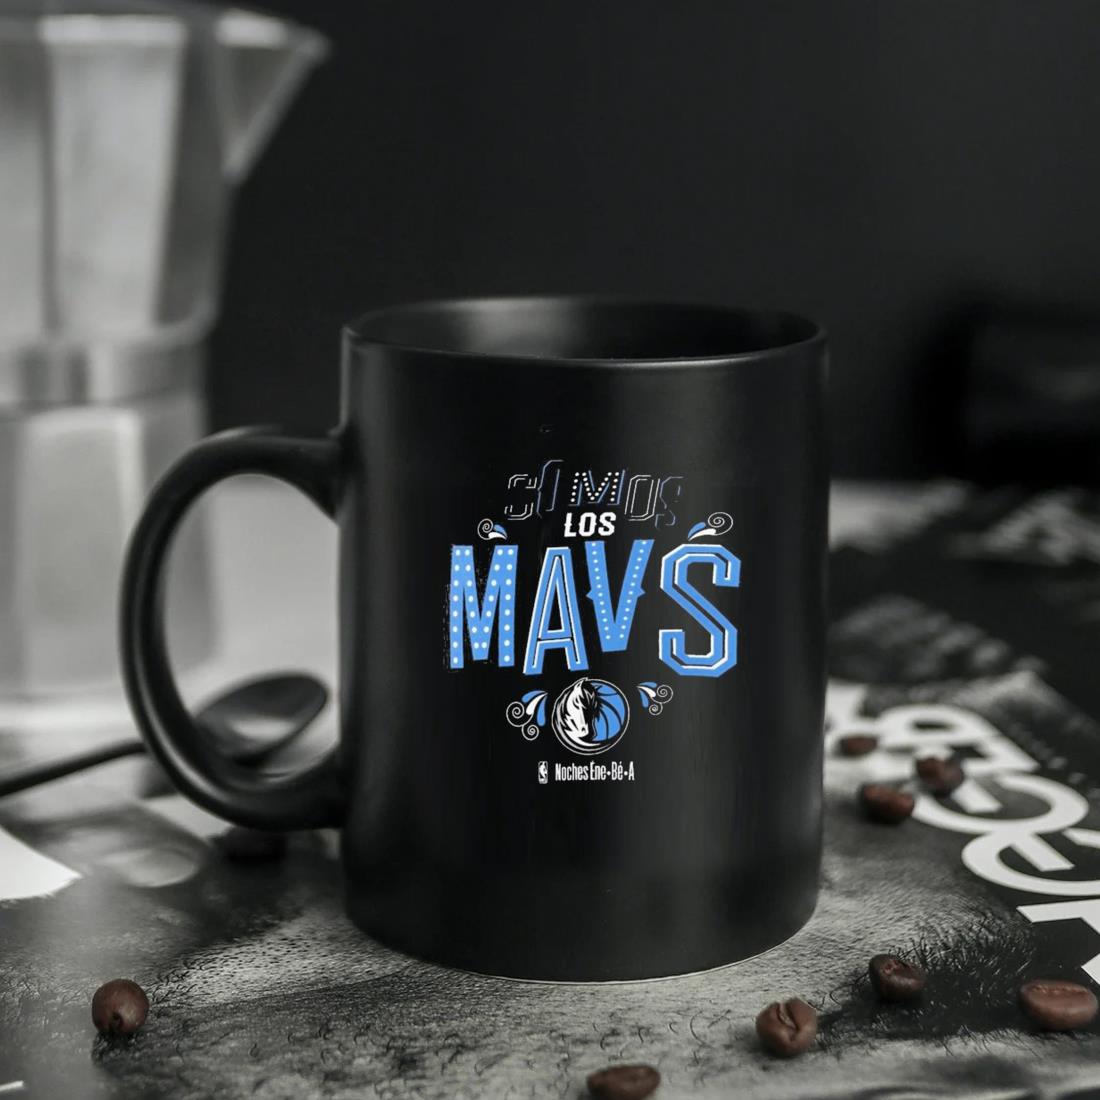 Somos Los Dallas Mavericks Noches Ene-be-a Mug ten